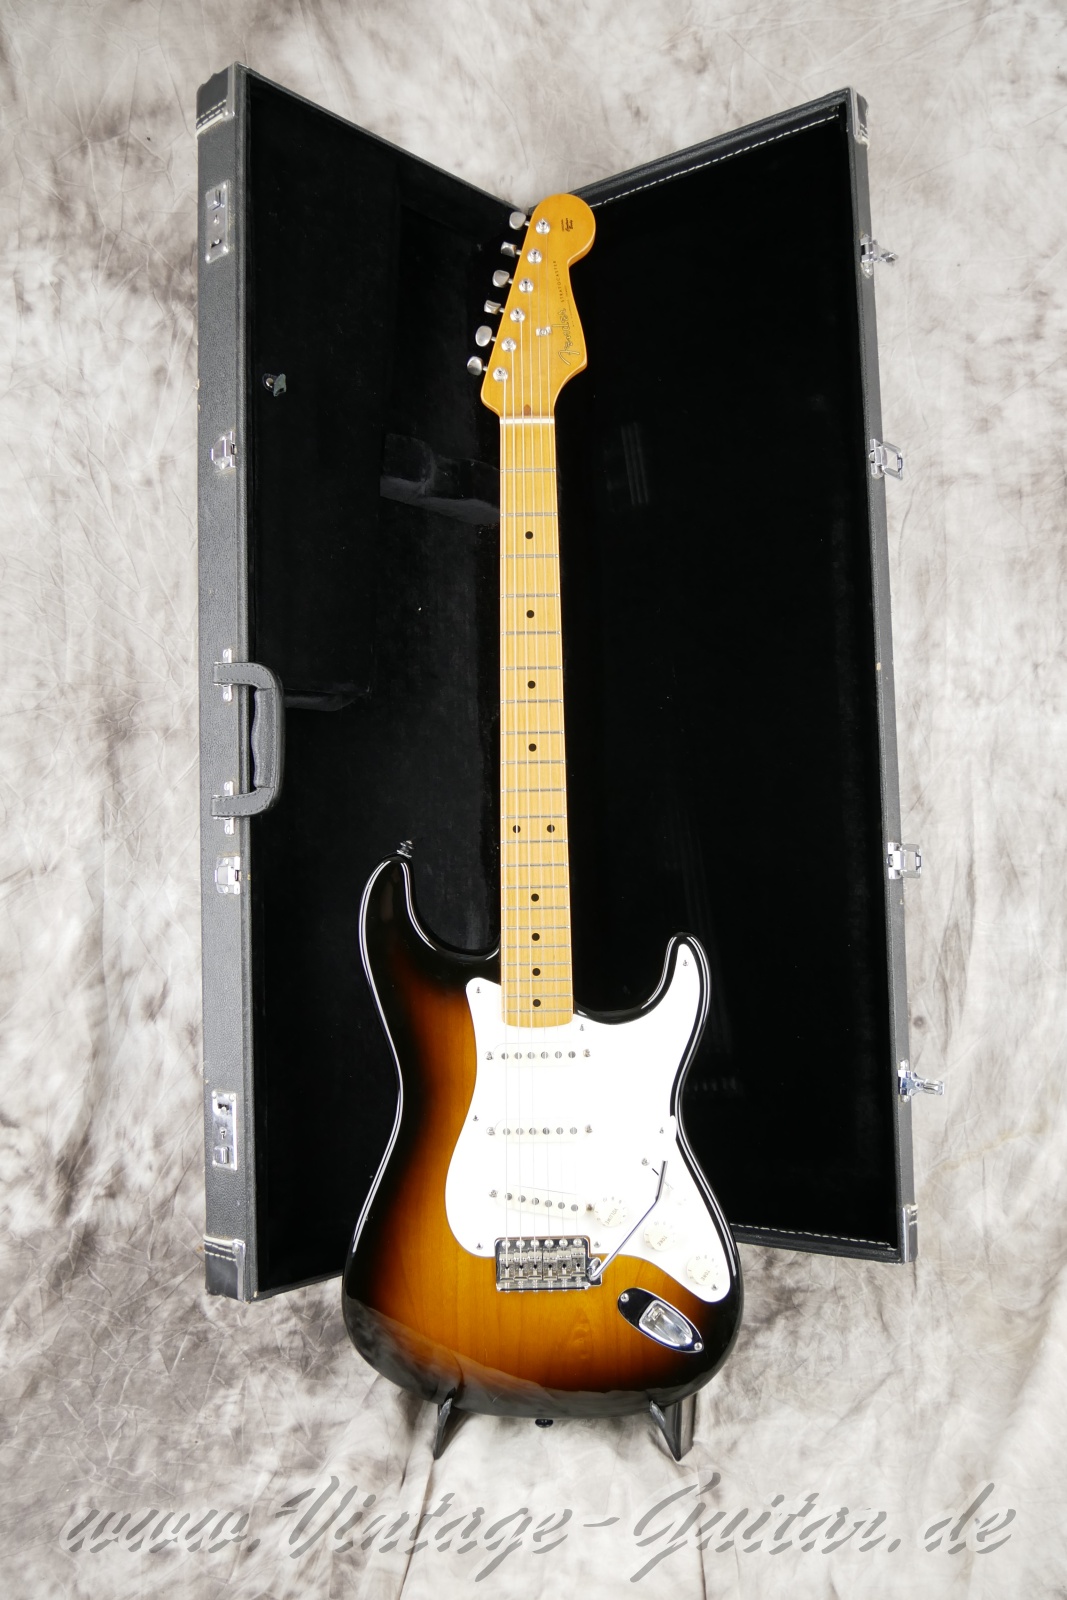 Fener-Stratocaster-Classic-player-series-50s-2007-sunburst-013.jpg